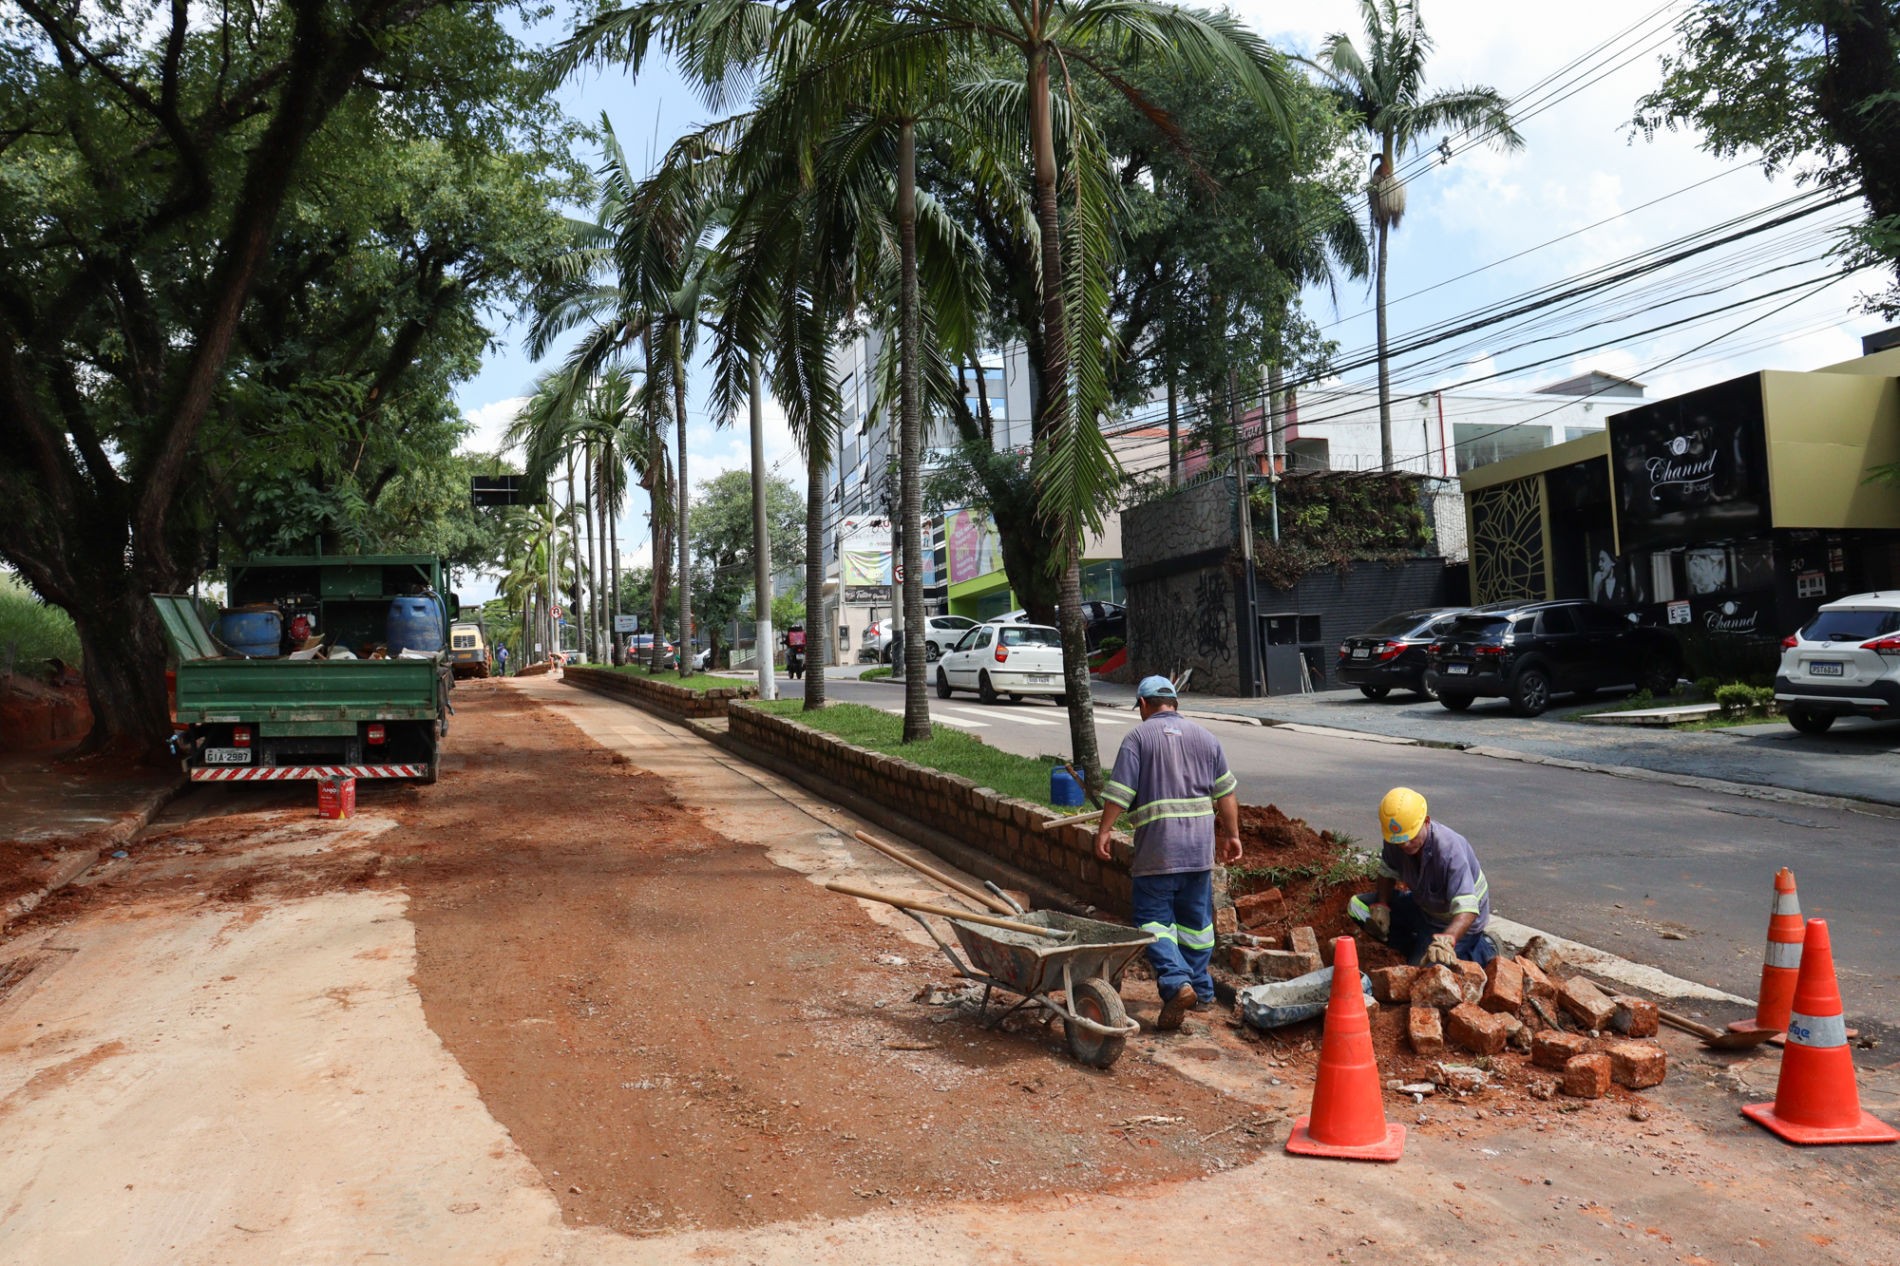 Obras de nova adutora interditam avenida em Jundiaí neste fim de semana